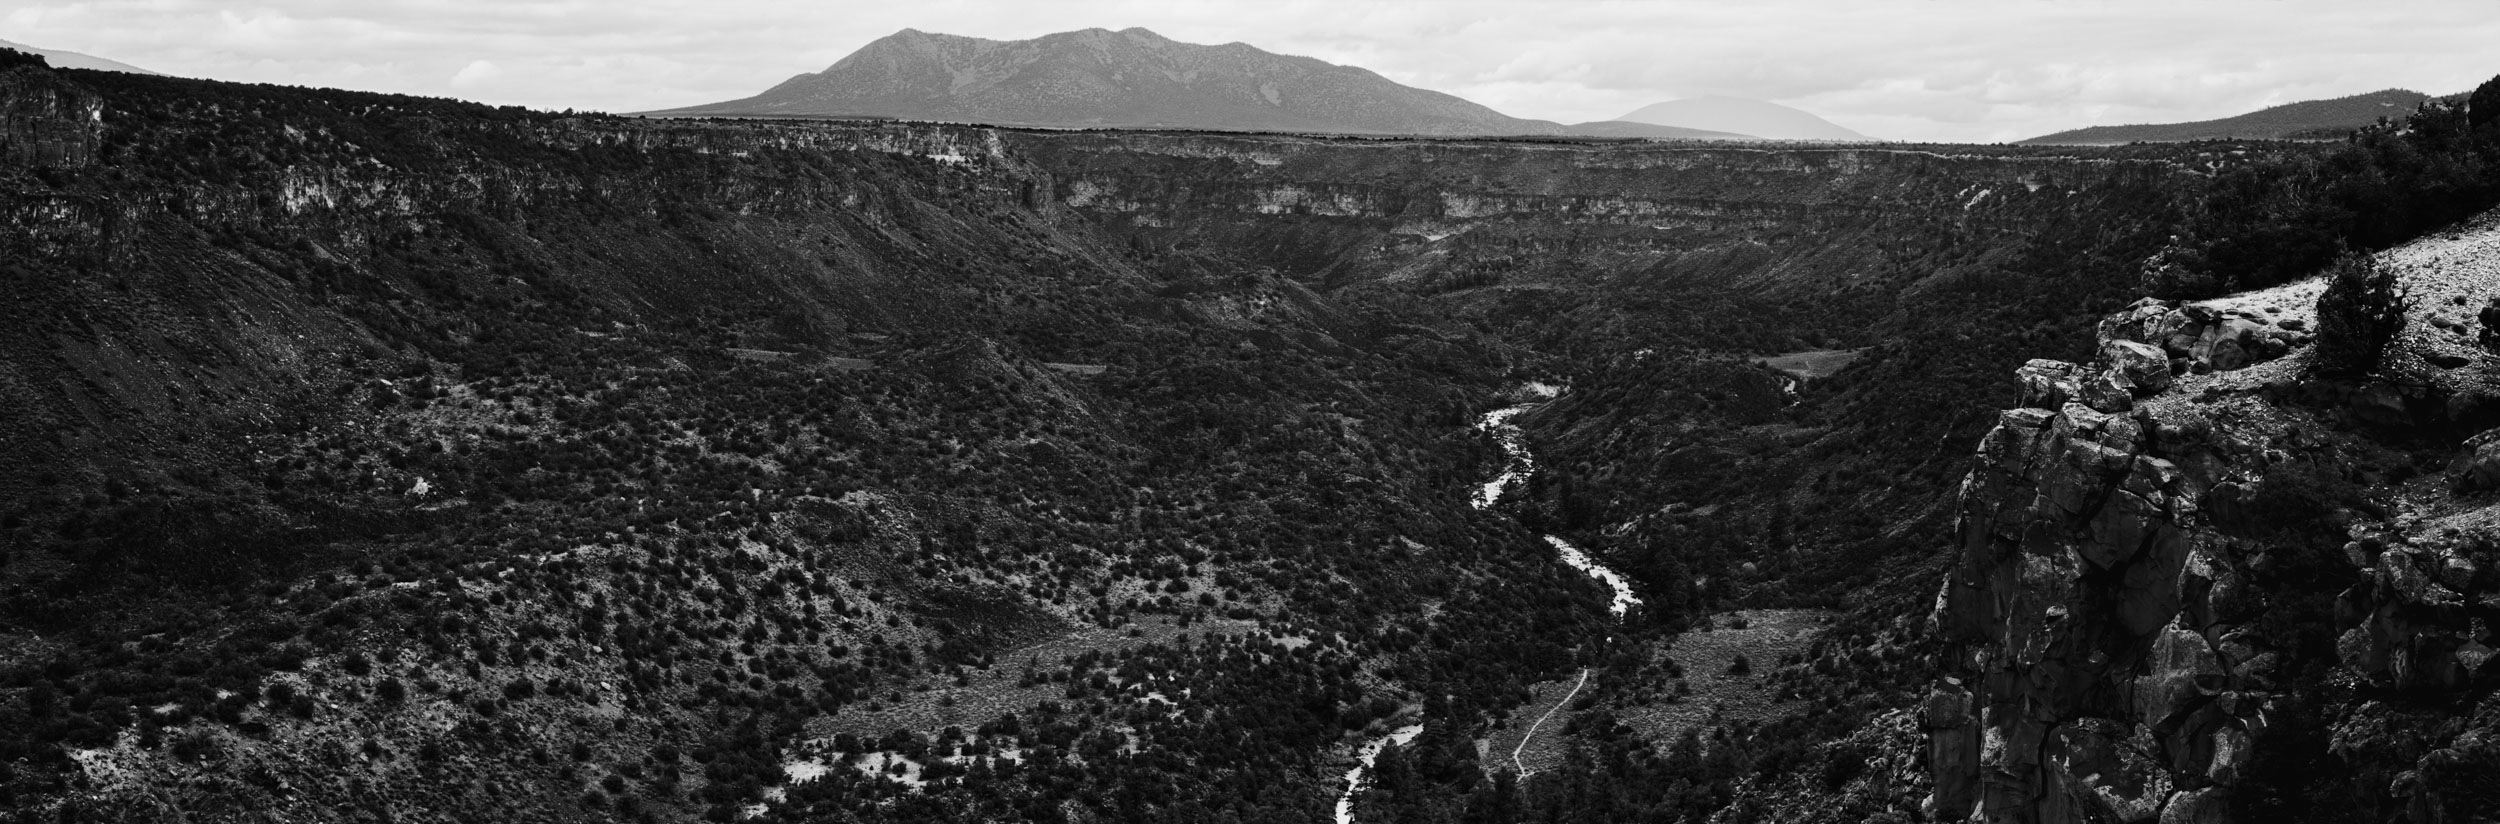 Rio Grande del Norte National Monument, New Mexico